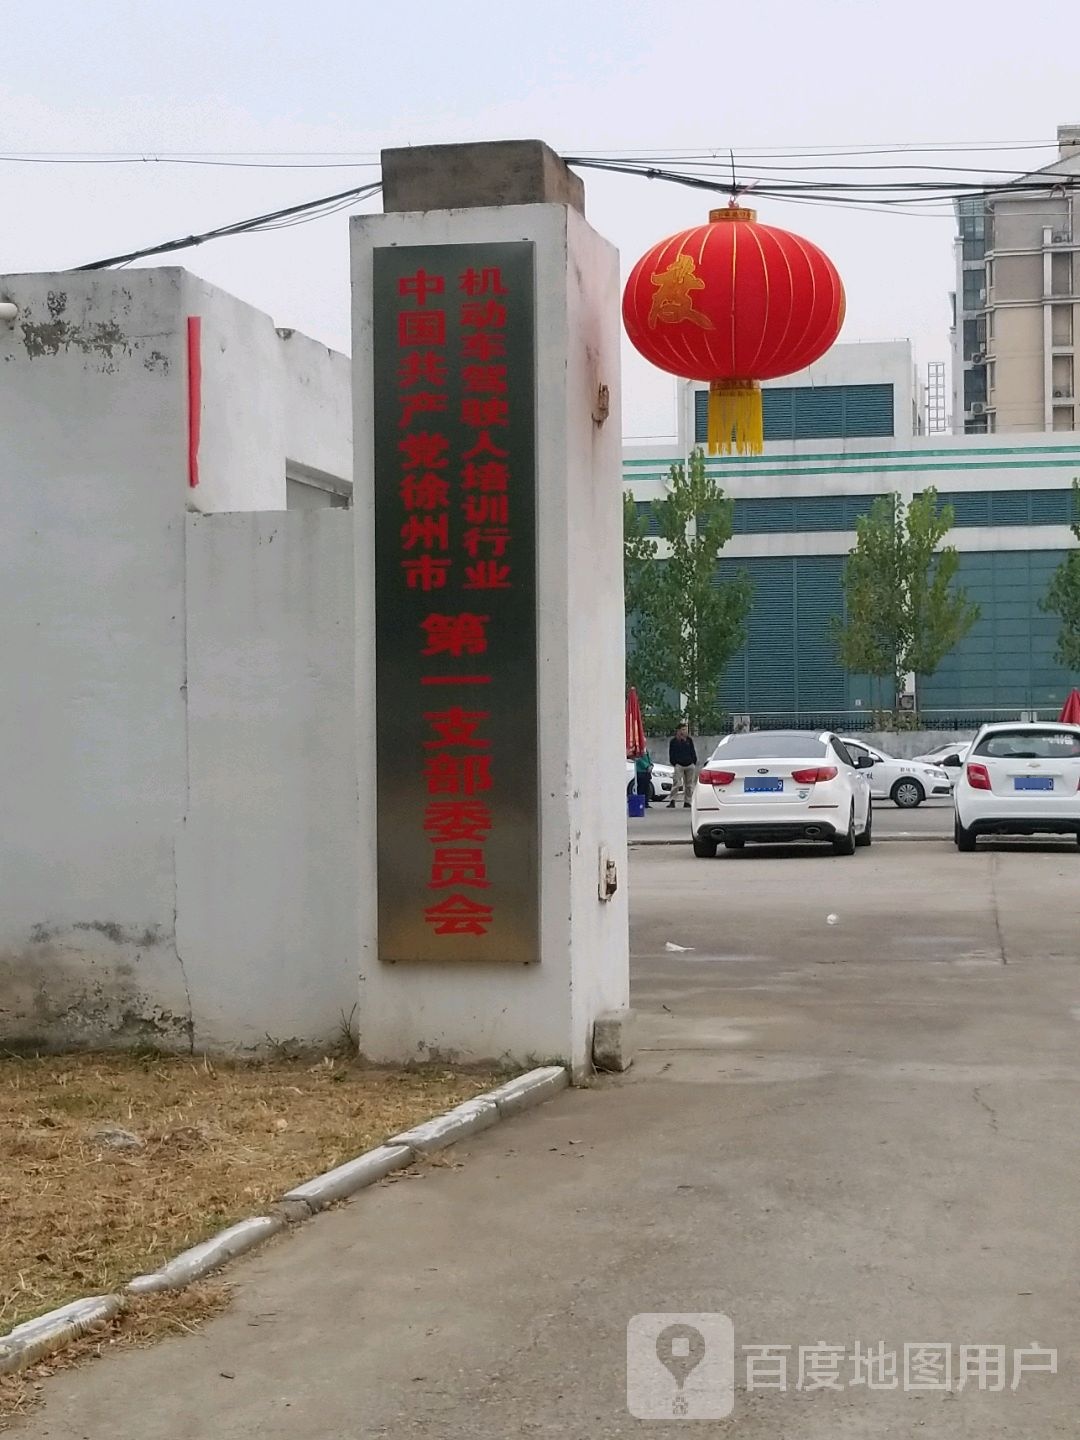 中国共产党徐州市机动车驾驶人培训行业第一支部委员会